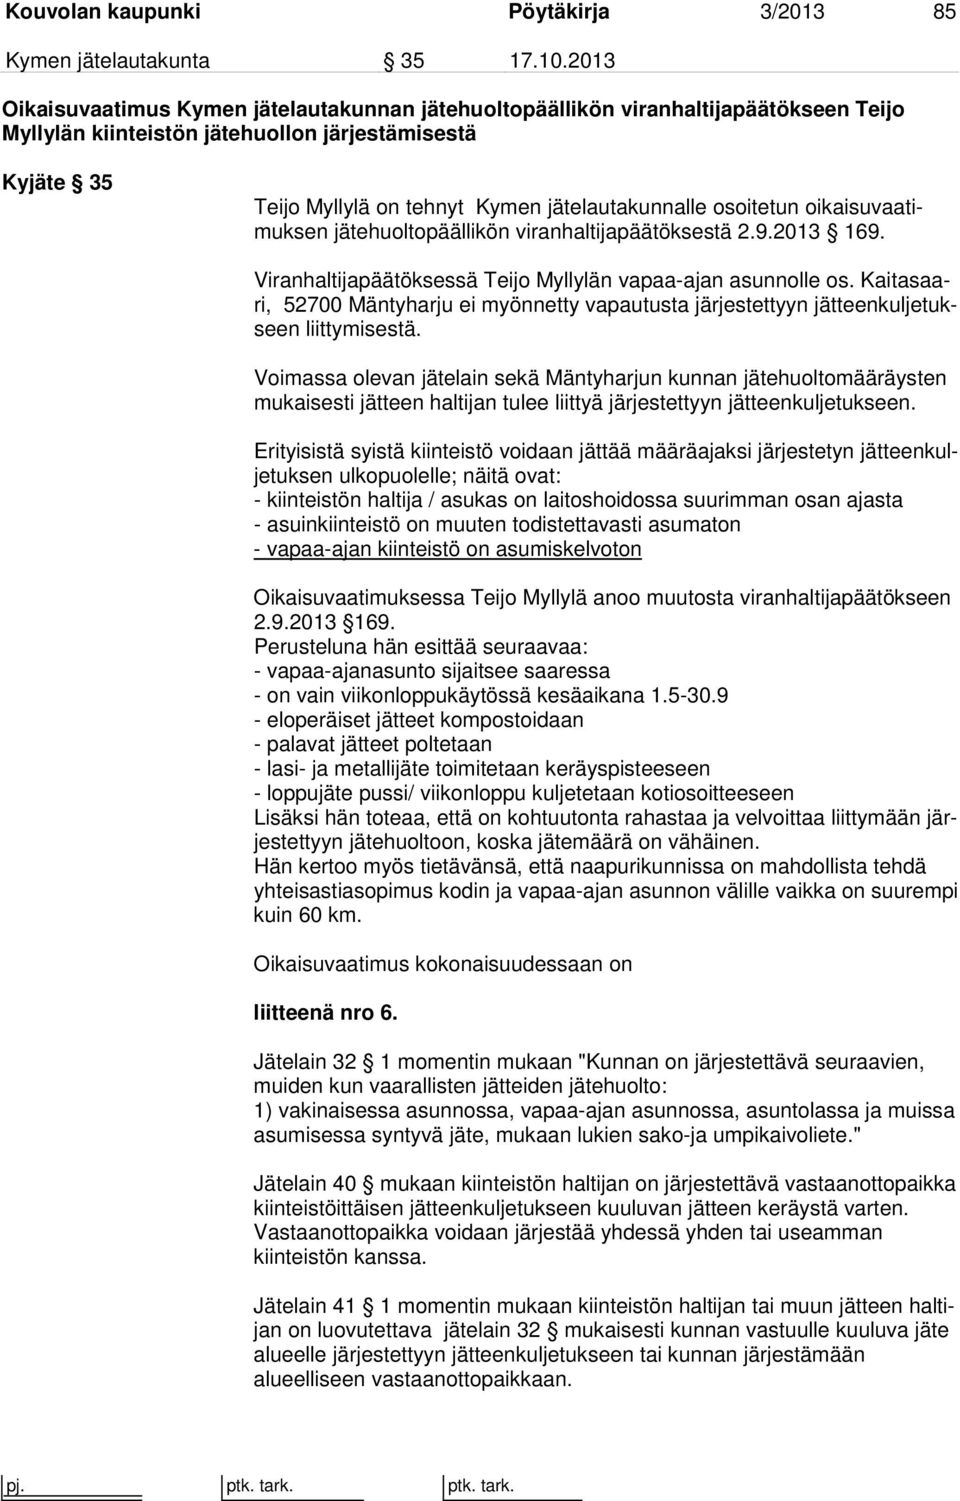 osoitetun oikaisuvaatimuksen jätehuoltopäällikön viranhaltijapäätöksestä 2.9.2013 169. Viranhaltijapäätöksessä Teijo Myllylän vapaa-ajan asunnolle os.